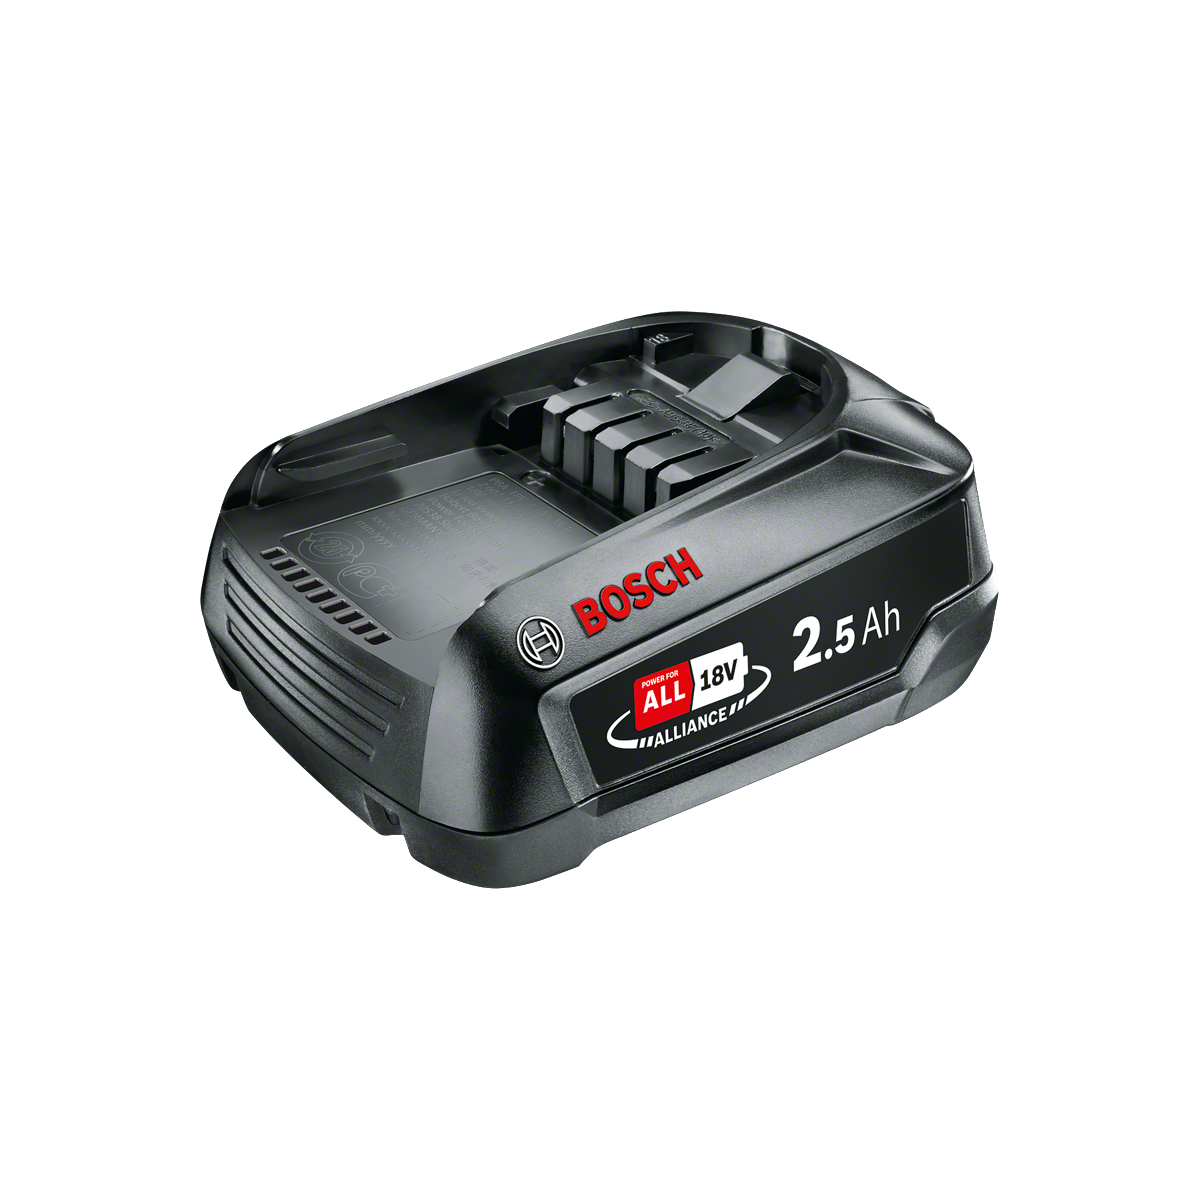 Bosch Batterie PBA 18V 2.5Ah W-B (1600A005B0)